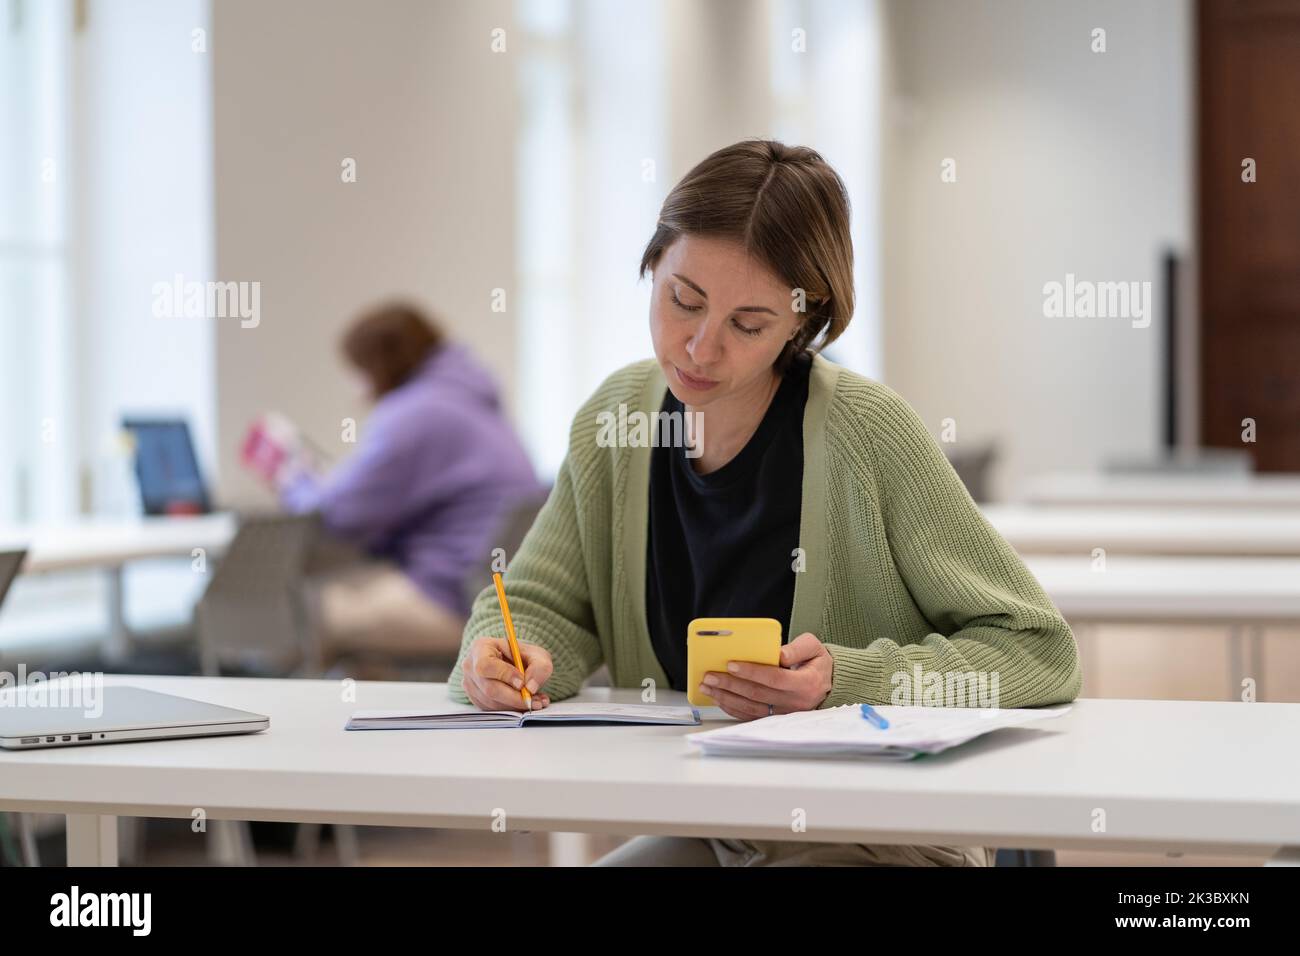 Estudiante madura concentrada que utiliza un smartphone para la preparación del examen, tomando el segundo grado Foto de stock